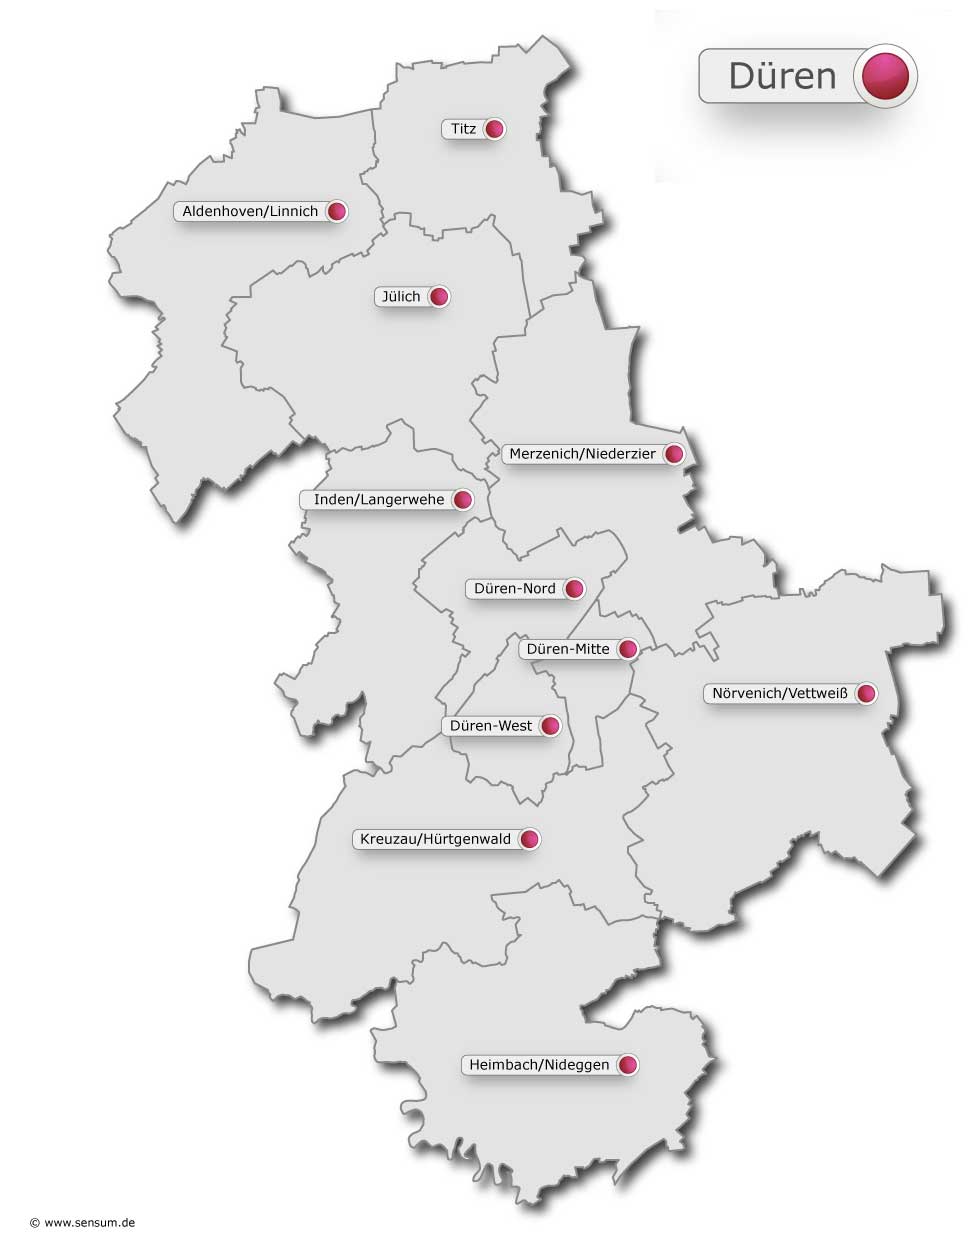 Region Düren (c) www.sensum.de